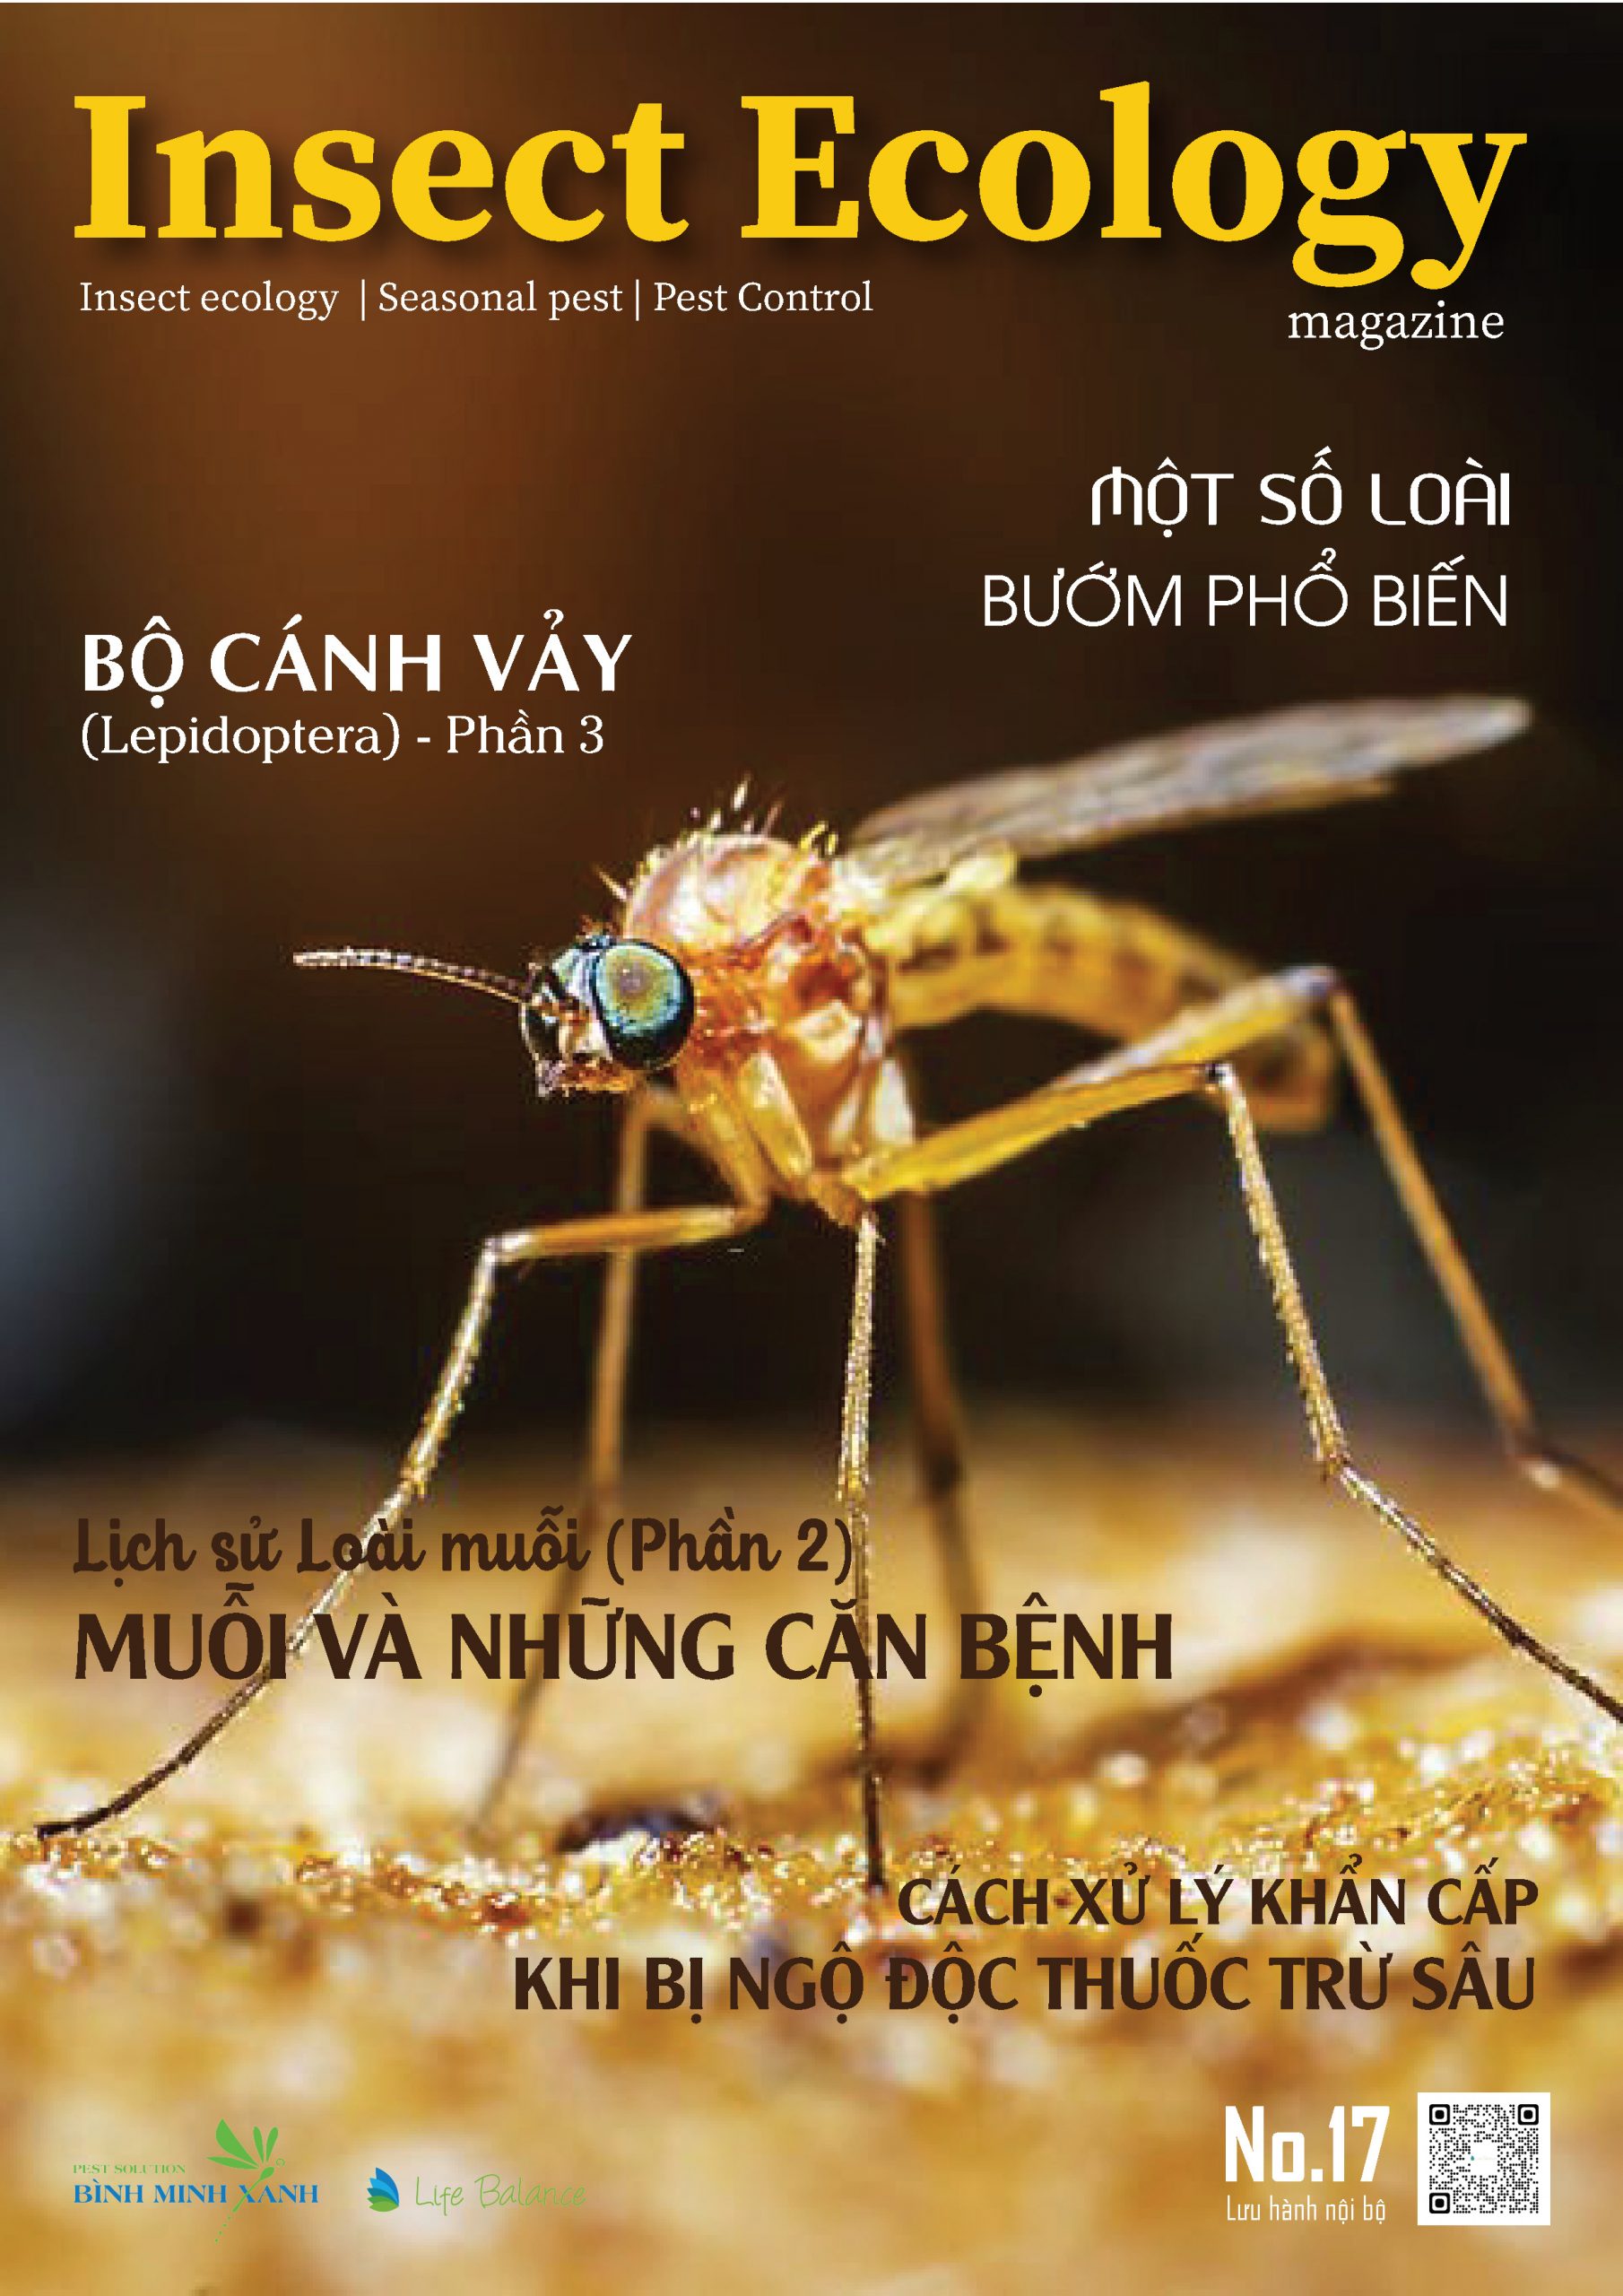 TẠP CHÍ INSECT ECOLOGY | No.17 | Muỗi và các bệnh của muỗi gây ra